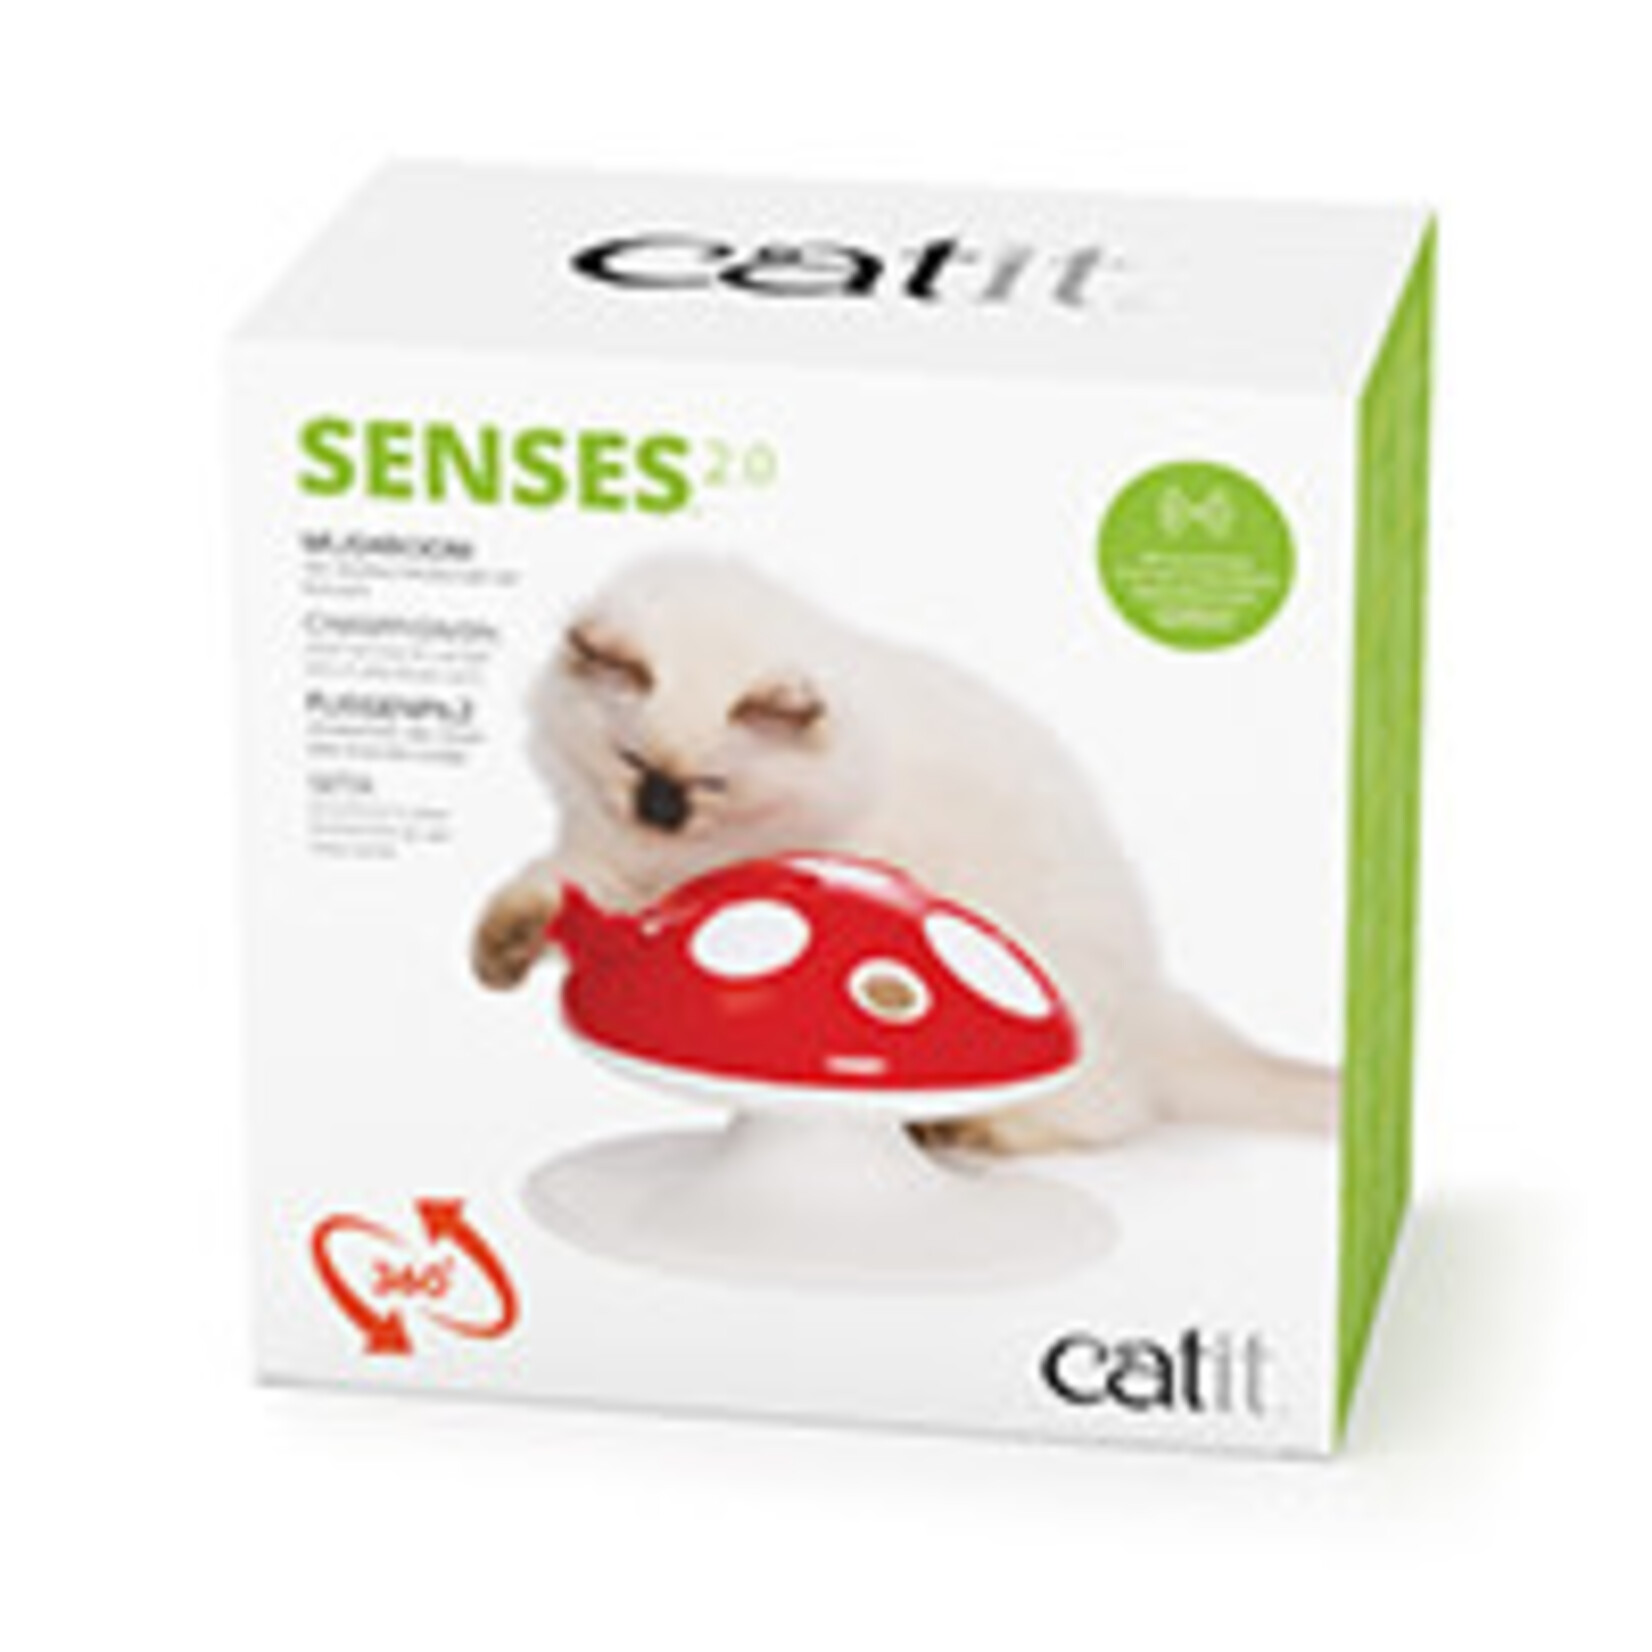 Catit Champignon Catit Senses, jouet interactif pour chats